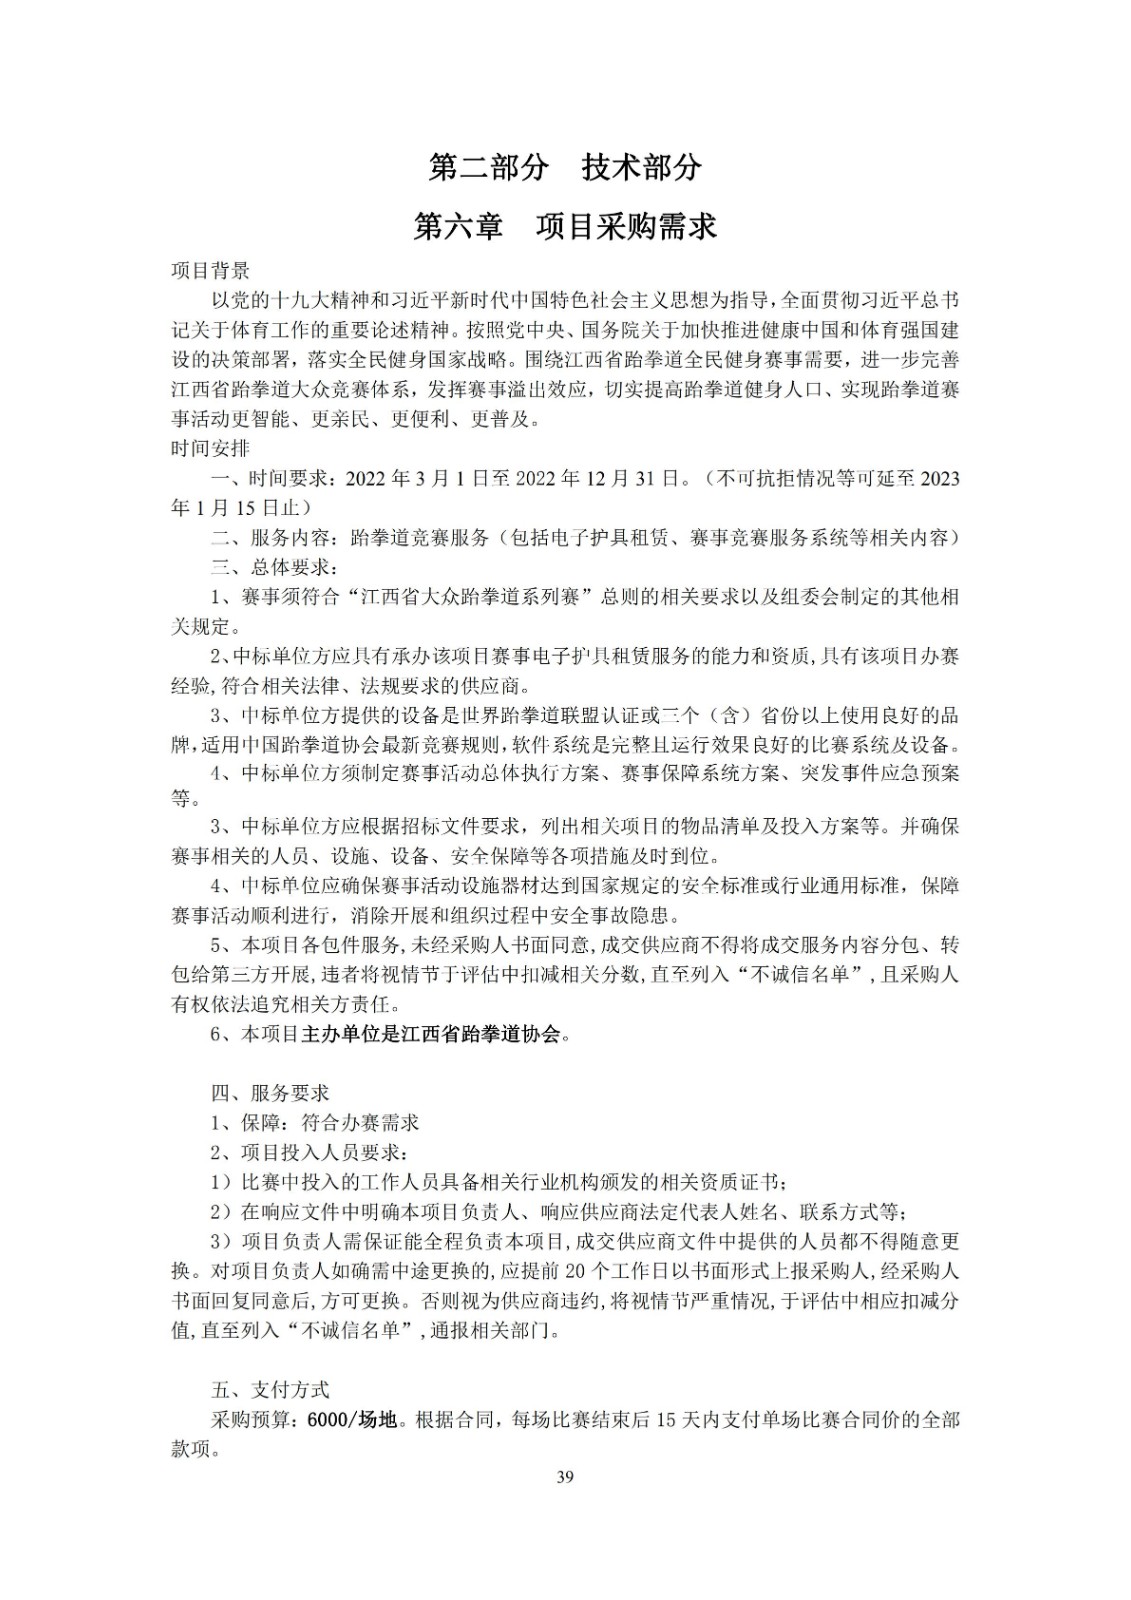 2022年江西省大众跆拳道系列赛电子护具租赁和竞赛系统服务项目招标文件_38.jpg